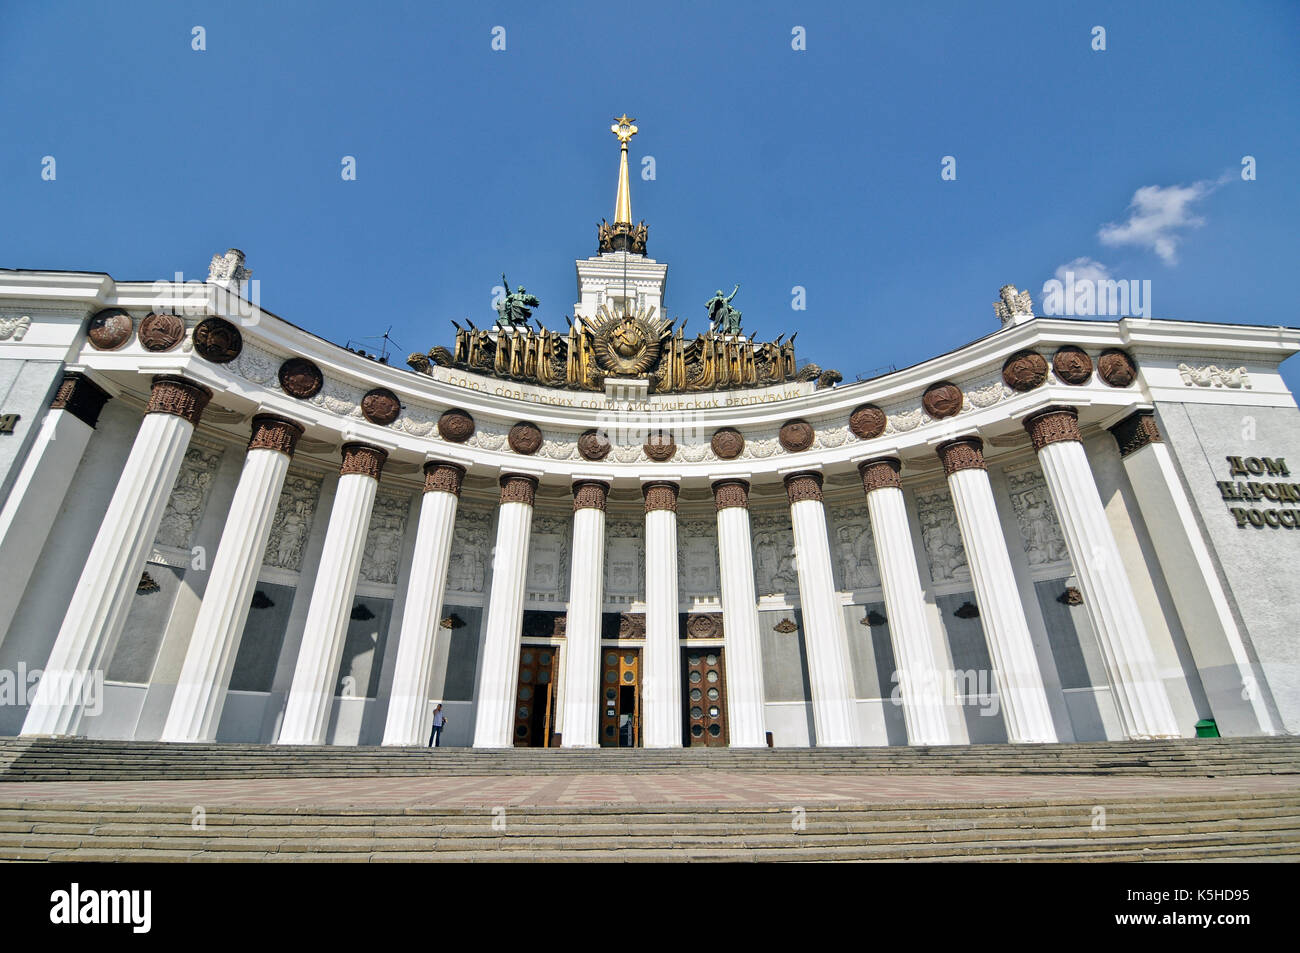 VDNH: Padiglione centrale (Casa del popolo russo - Dom Narodov Rossii), Mosca, Russia Foto Stock